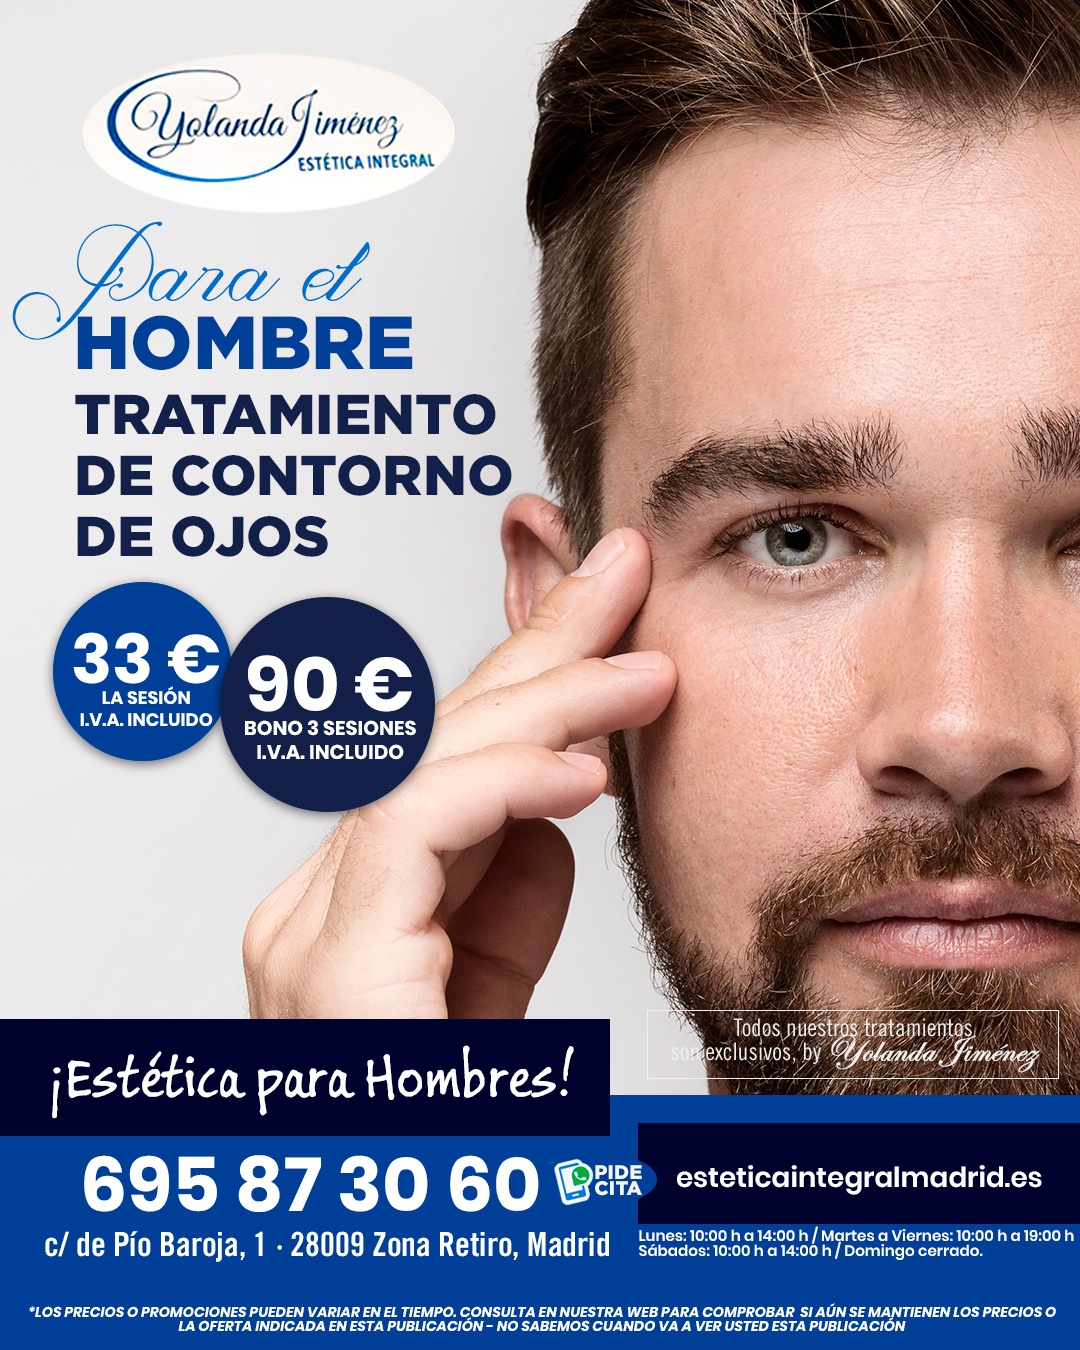 Ofertas centro de estetica Madrid - Tratamientos faciales mes de Abril de 2023